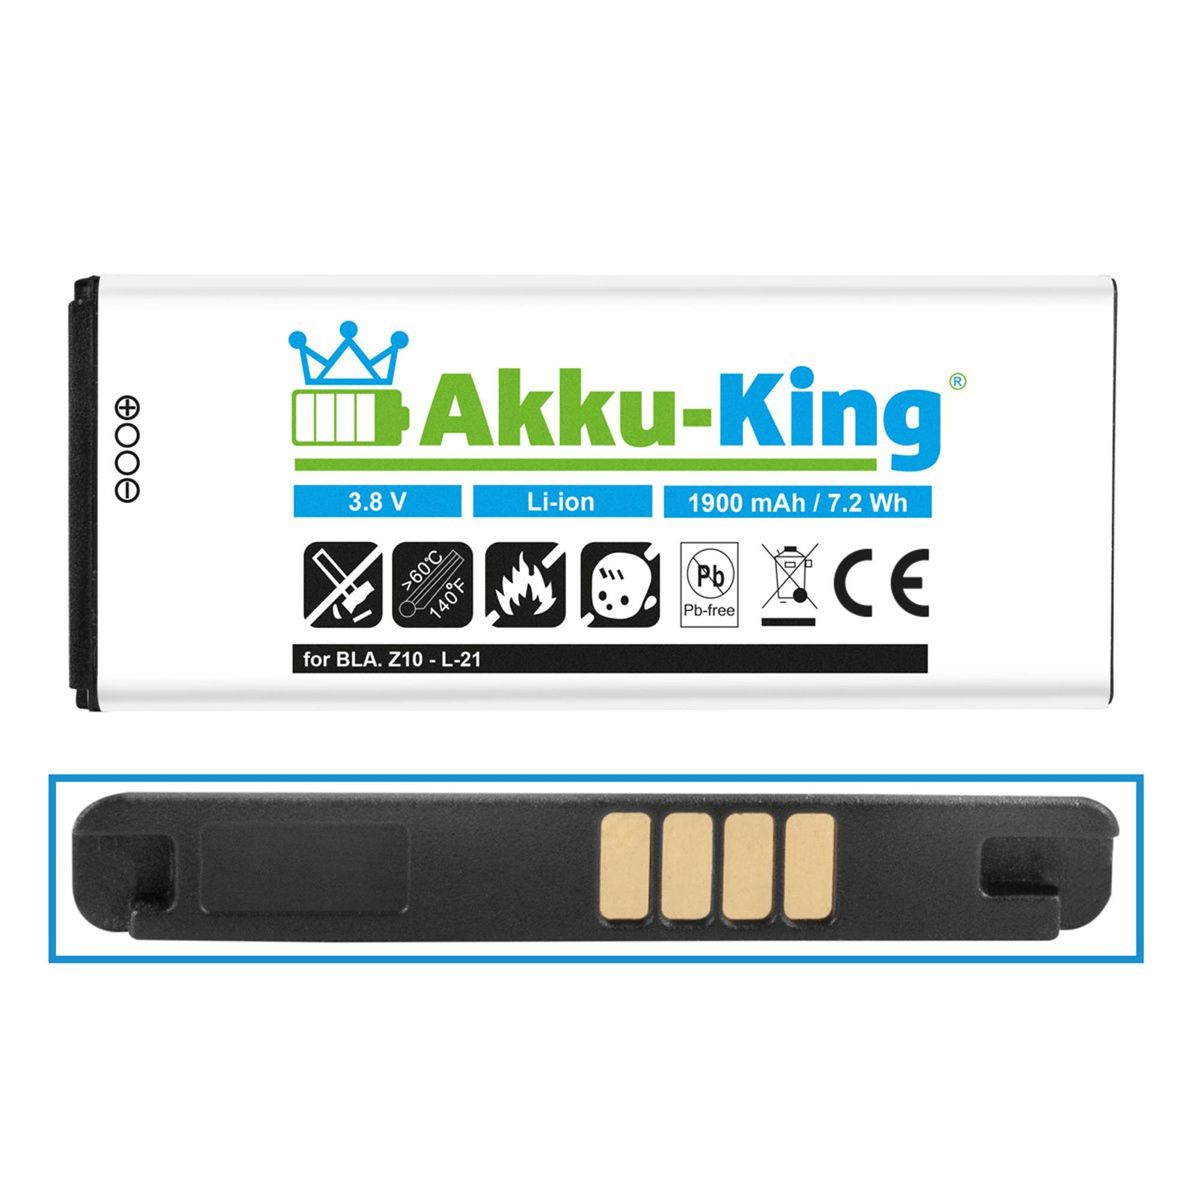 Handy-Akku, Li-Ion für 3.8 Akku 1900mAh L-S1 Volt, BlackBerry AKKU-KING